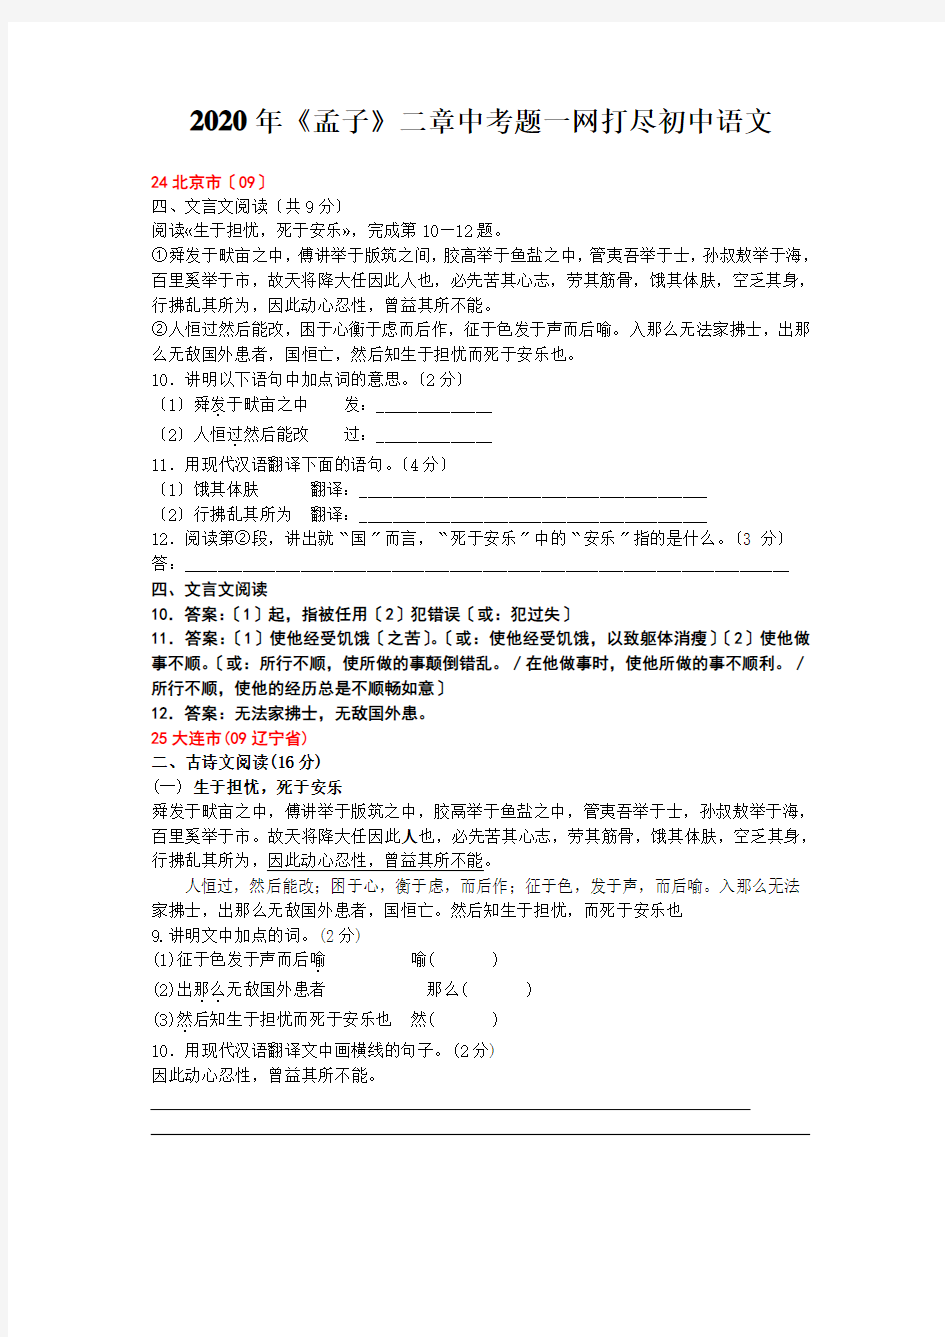 2020年《孟子》二章中考题一网打尽初中语文